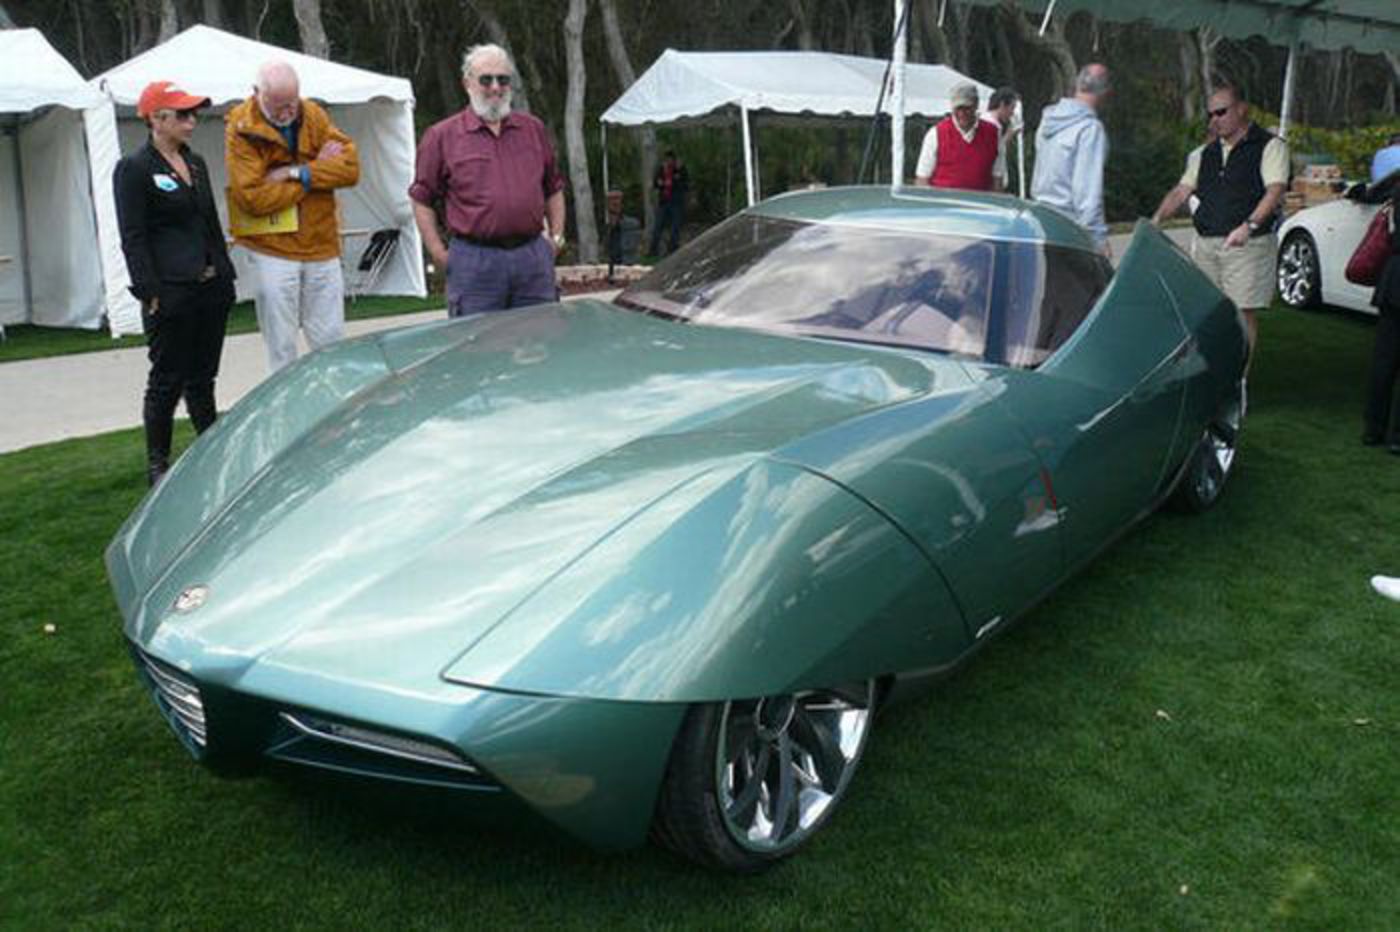 1956 General Motors Firebird II Concept Car